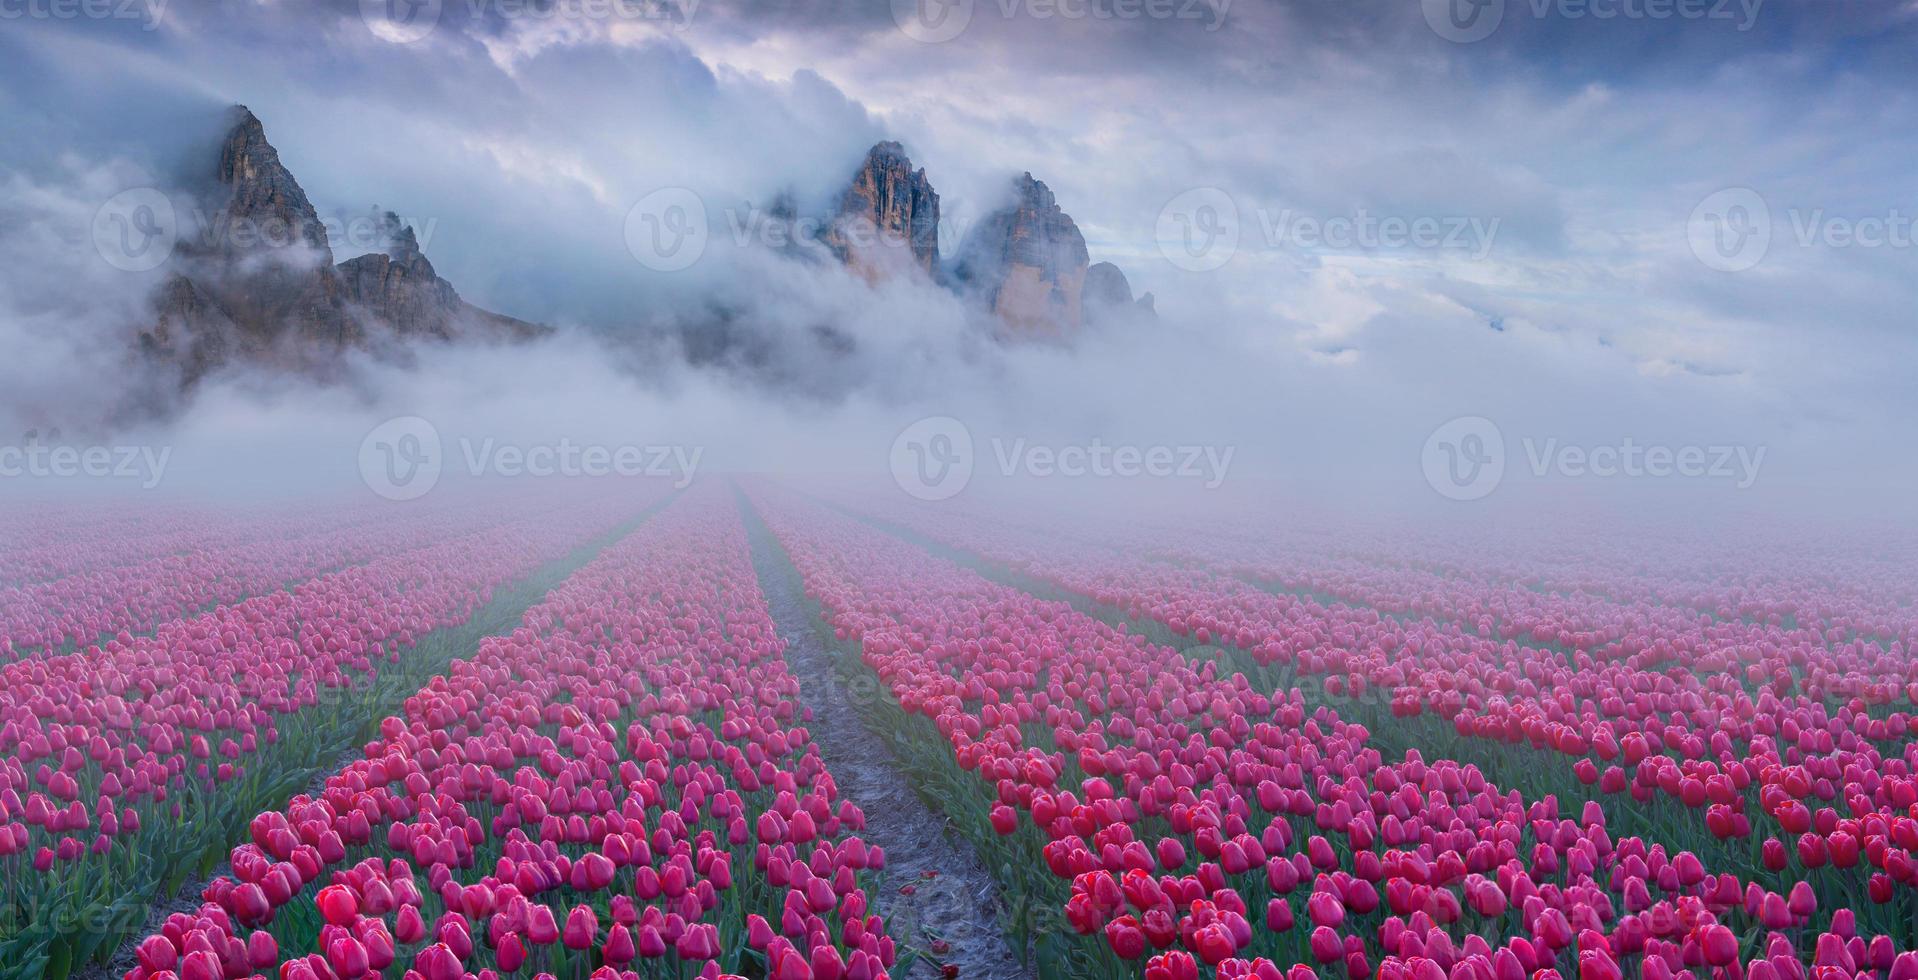 fantastique paysage de printemps avec des champs de tulipes cultivés à l'extérieur photo